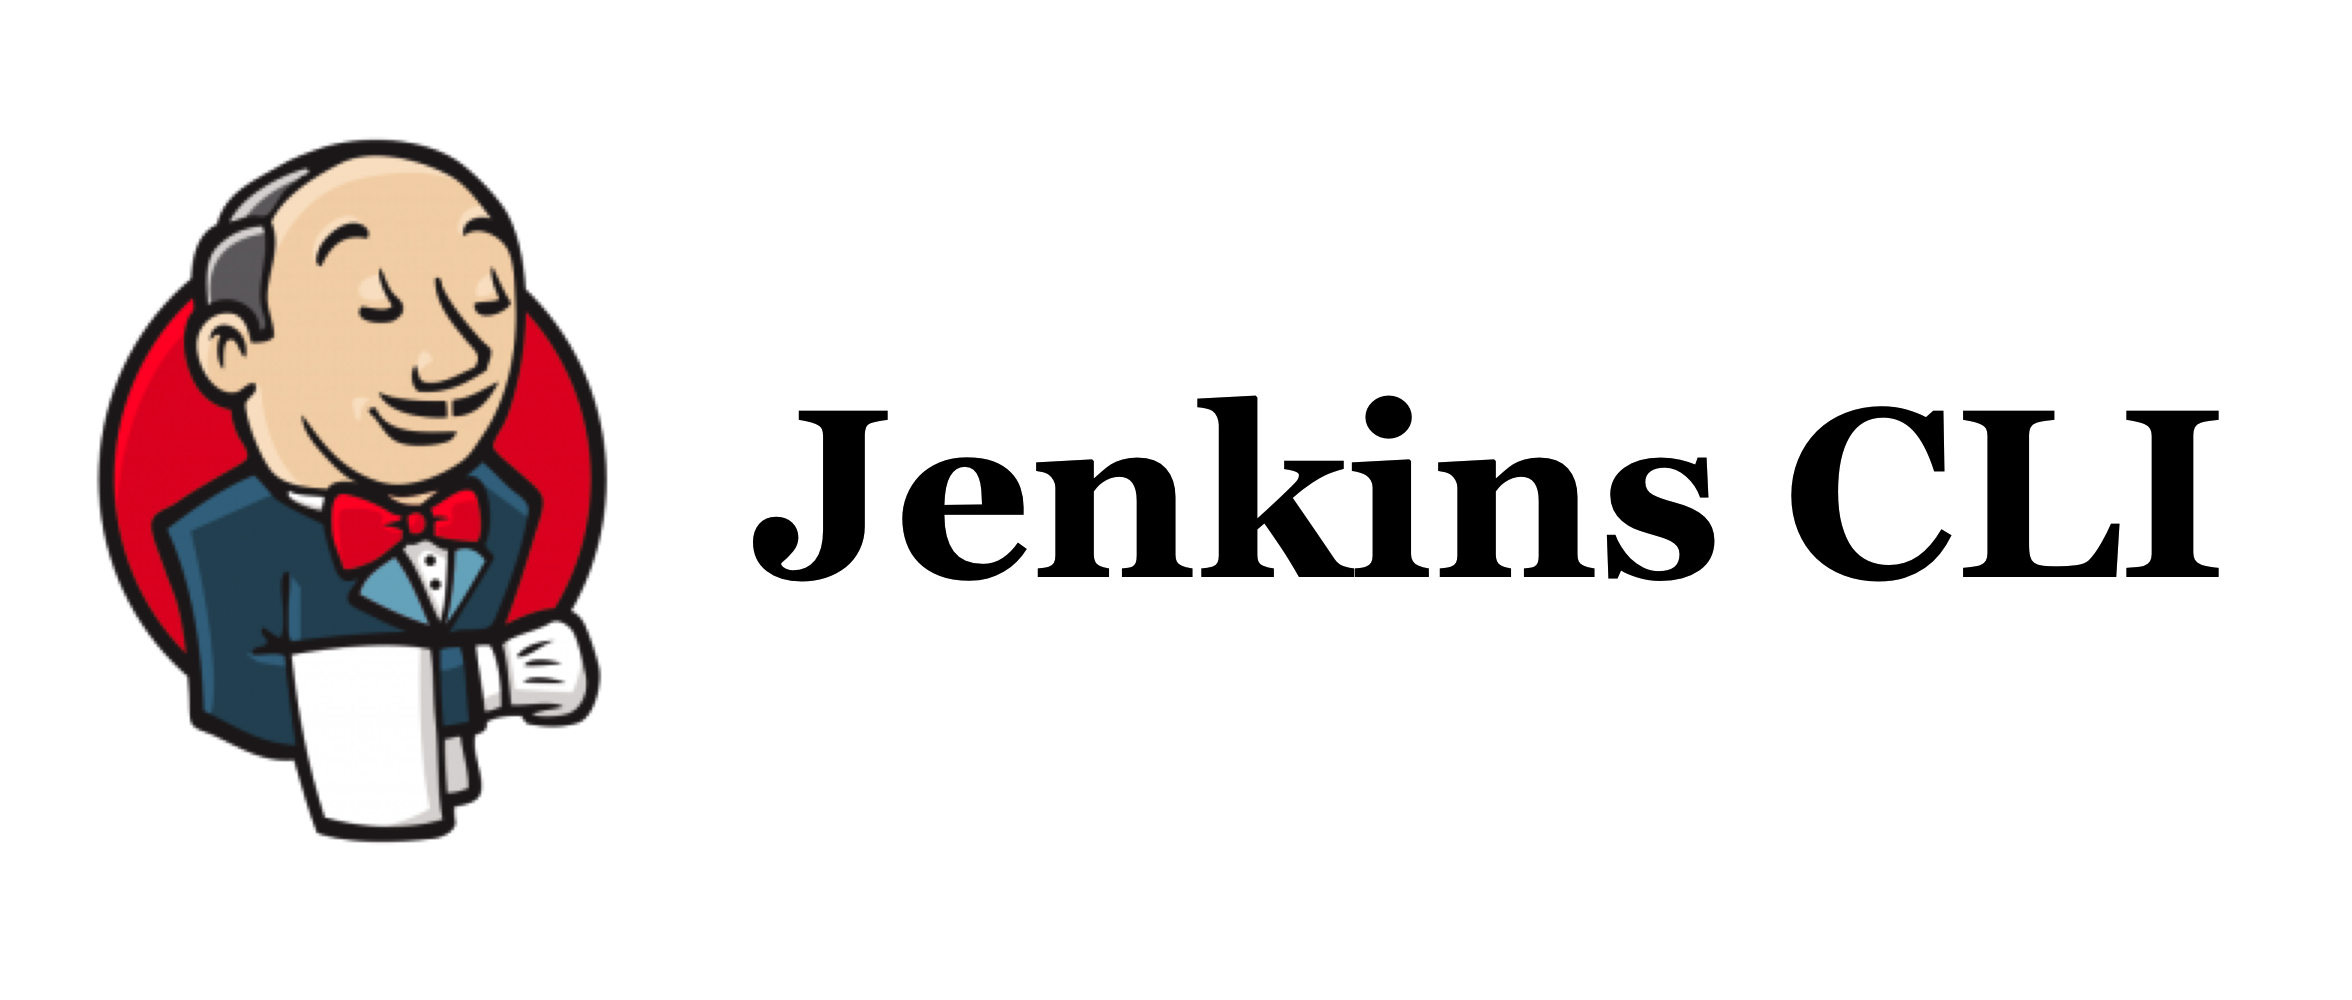 Jenkins CLI 命令行 v0.0.26 发布